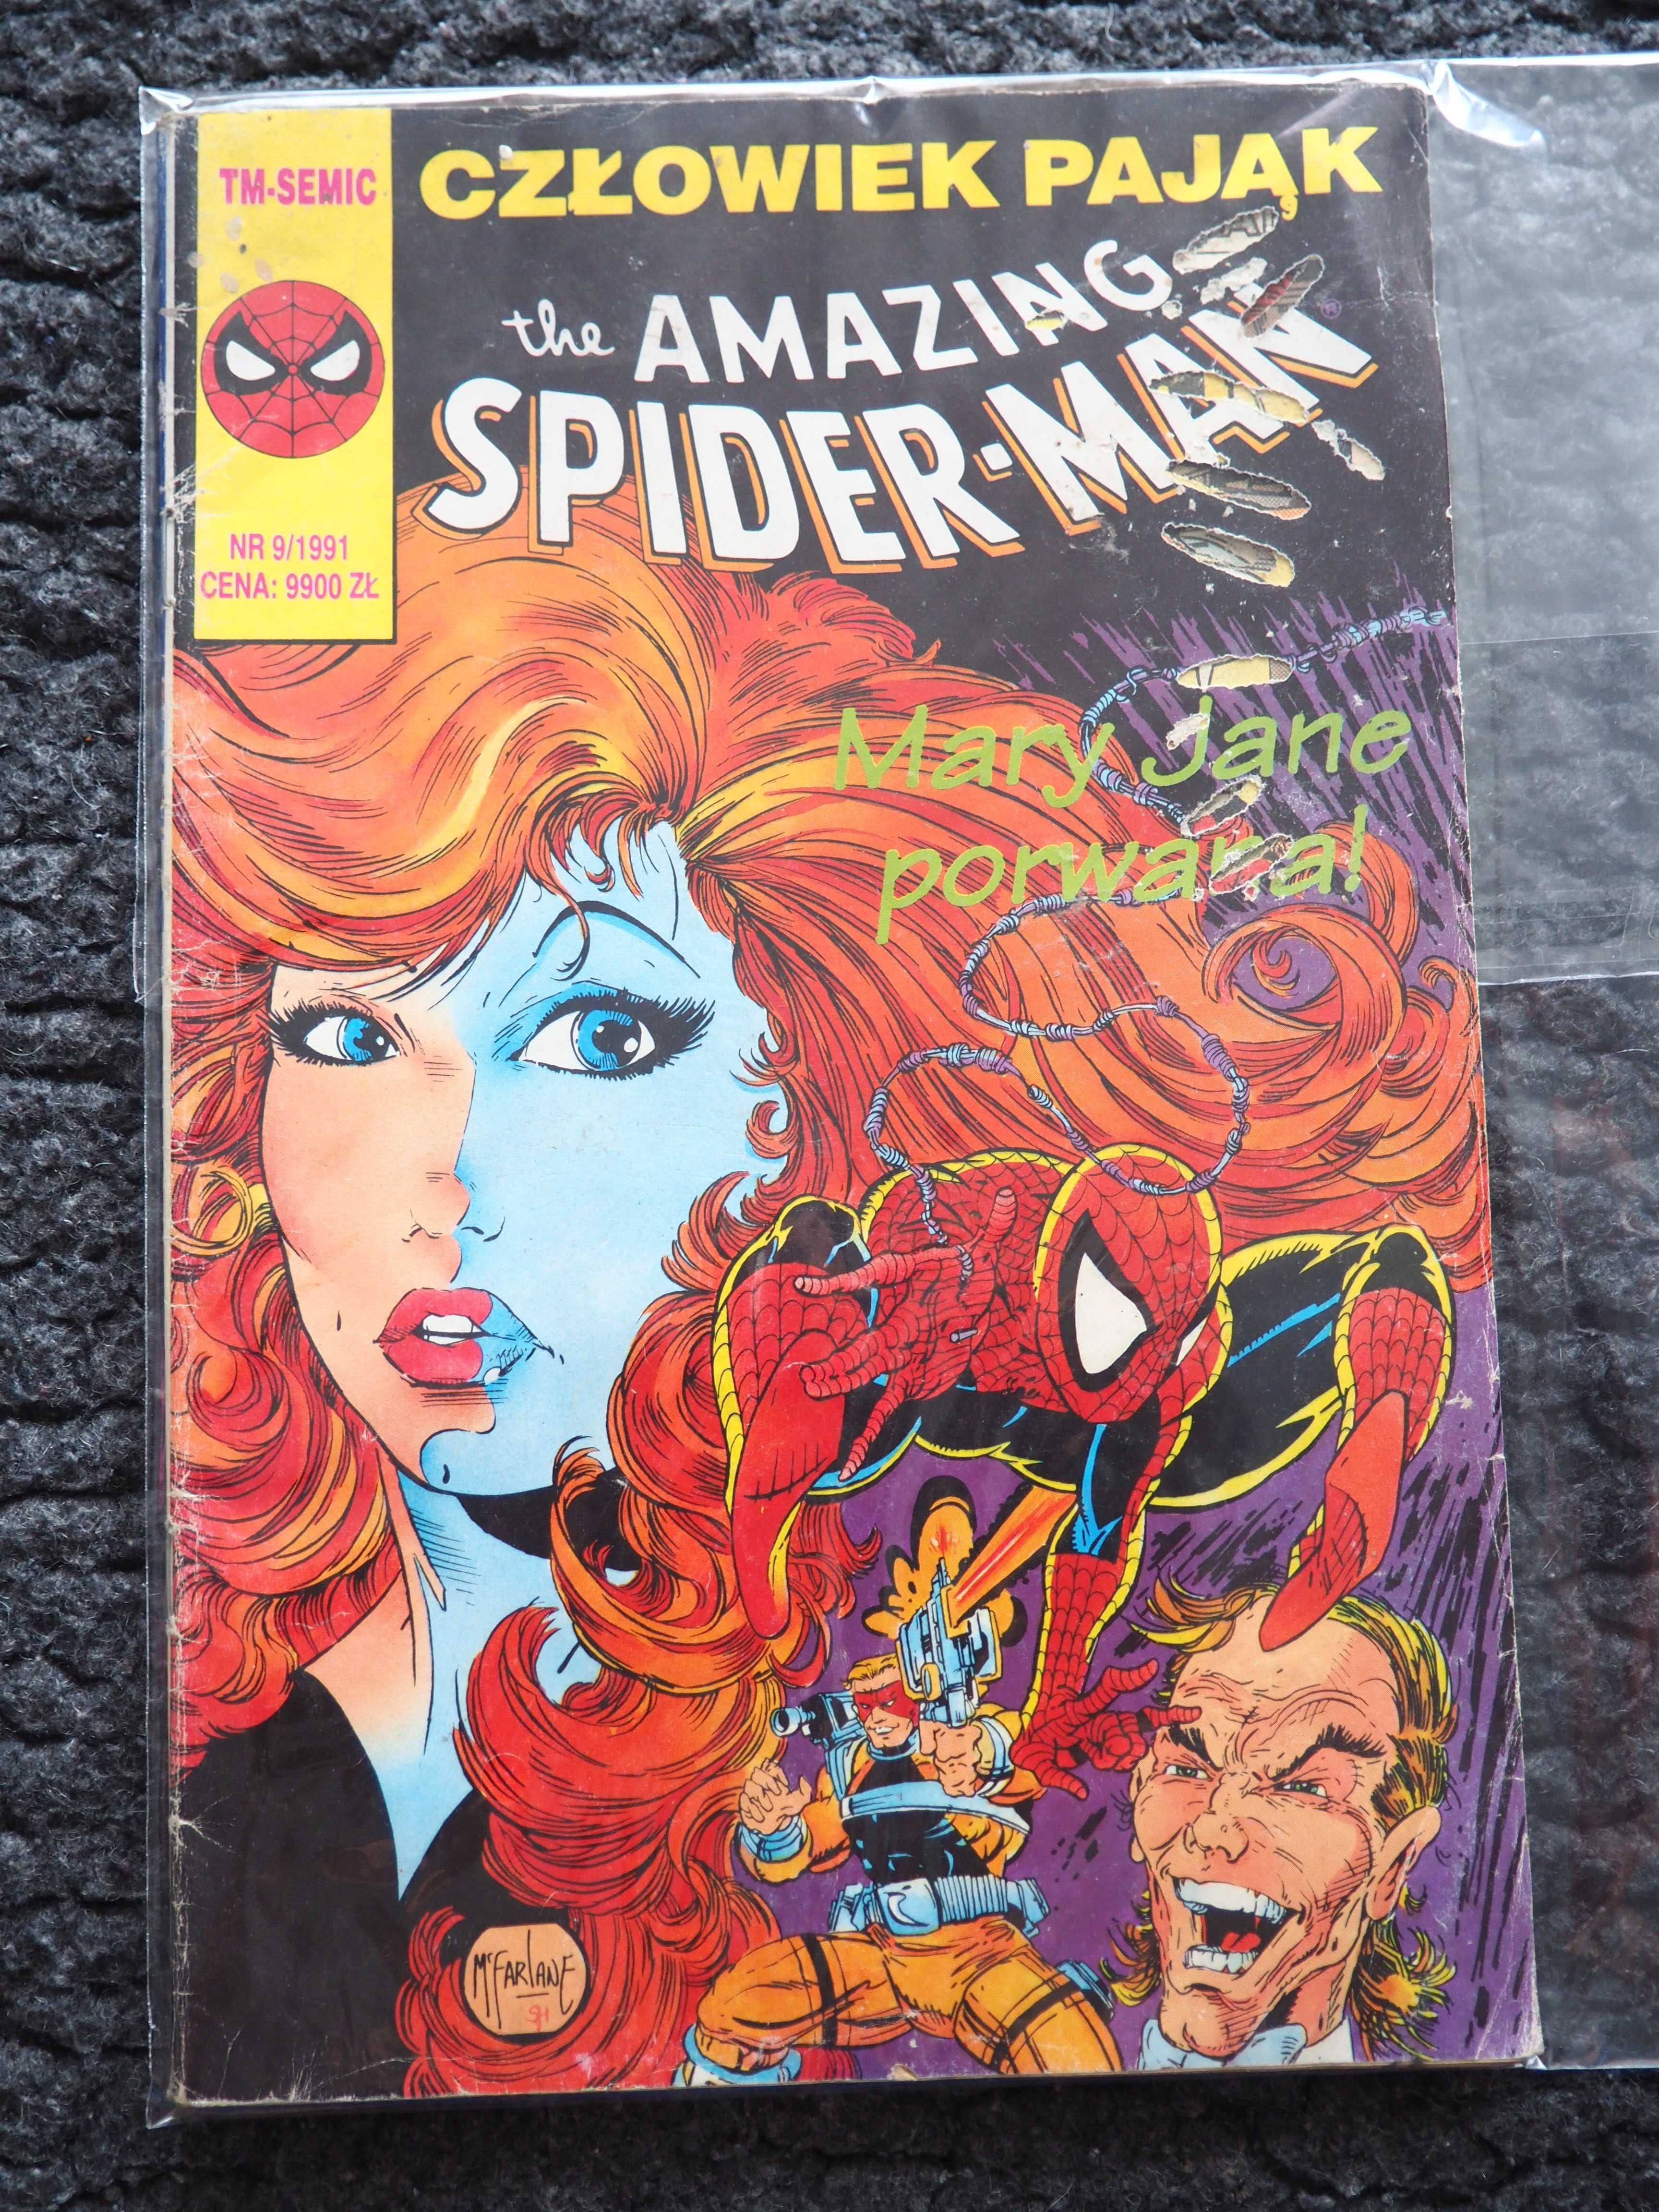 Komiks TM-Semic, the amazing spiderman, 9 1991 stan db